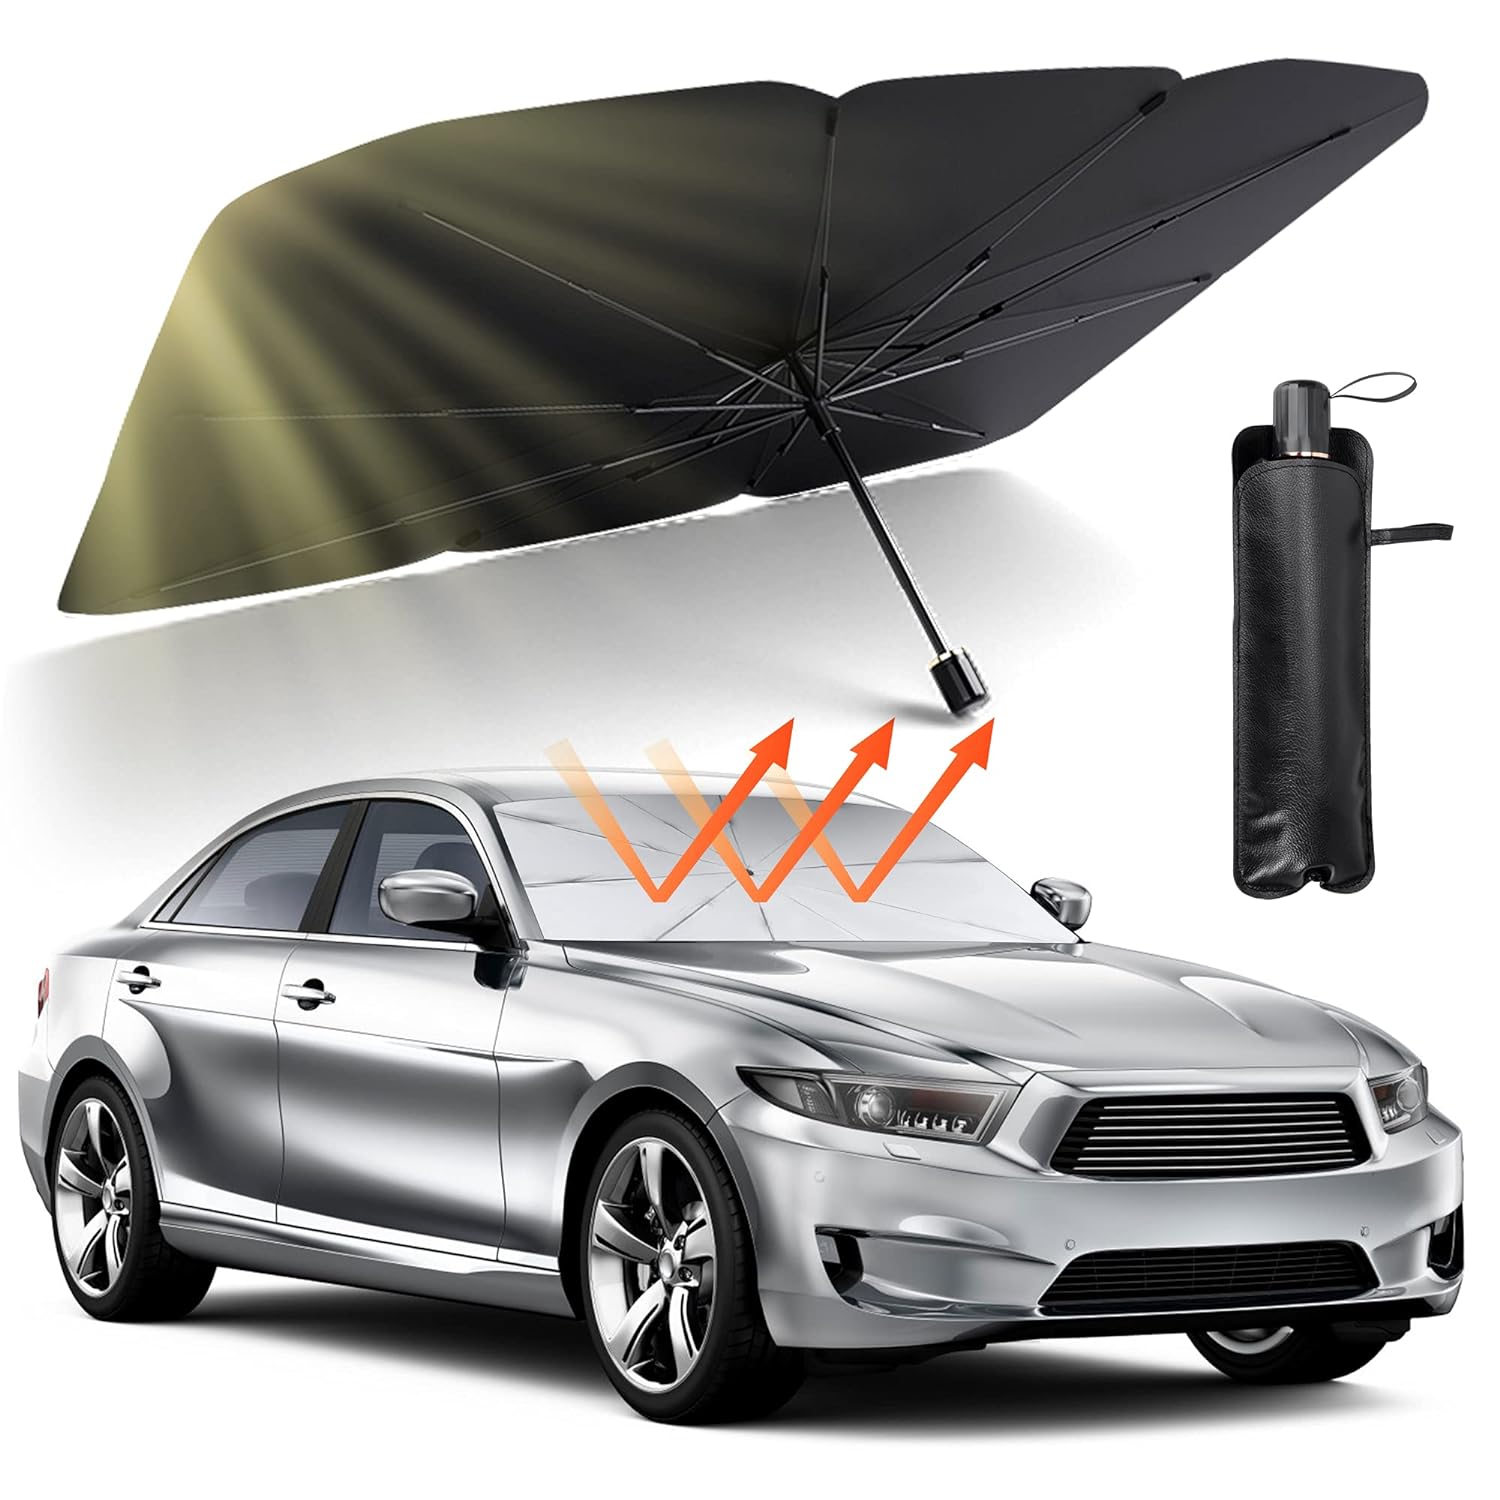 Car windshield sun bath umbrella